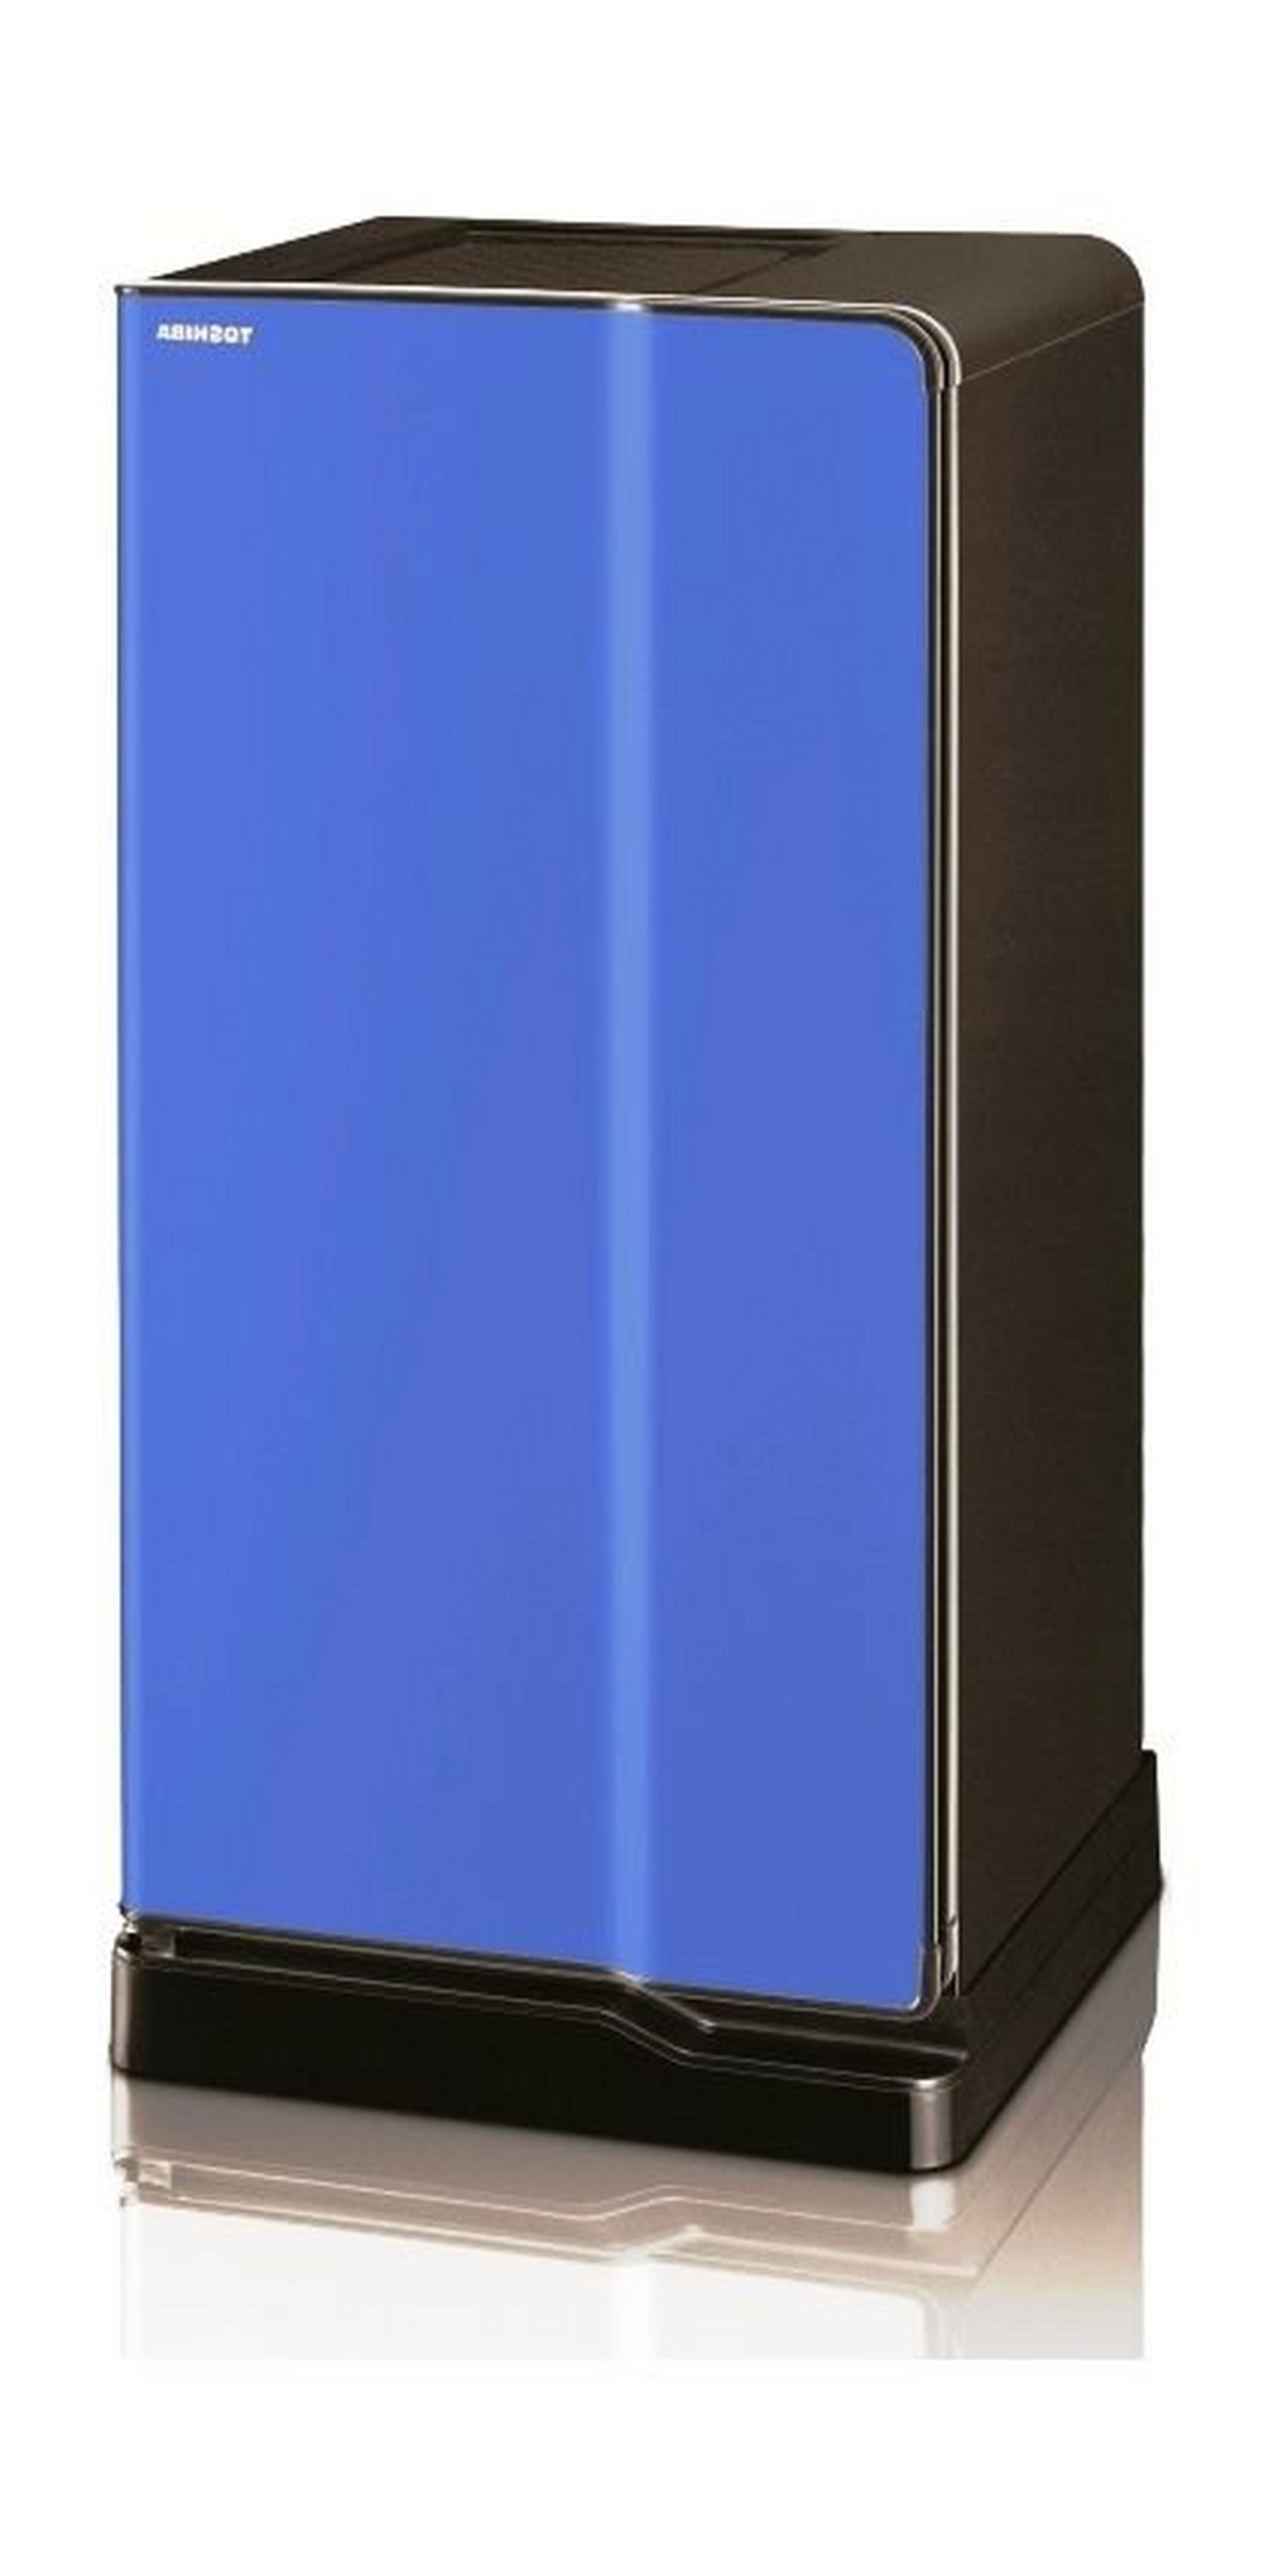 ثلاجة توشيبا باب واحد ٦,٤ قدم – أزرق (GR-E1837)